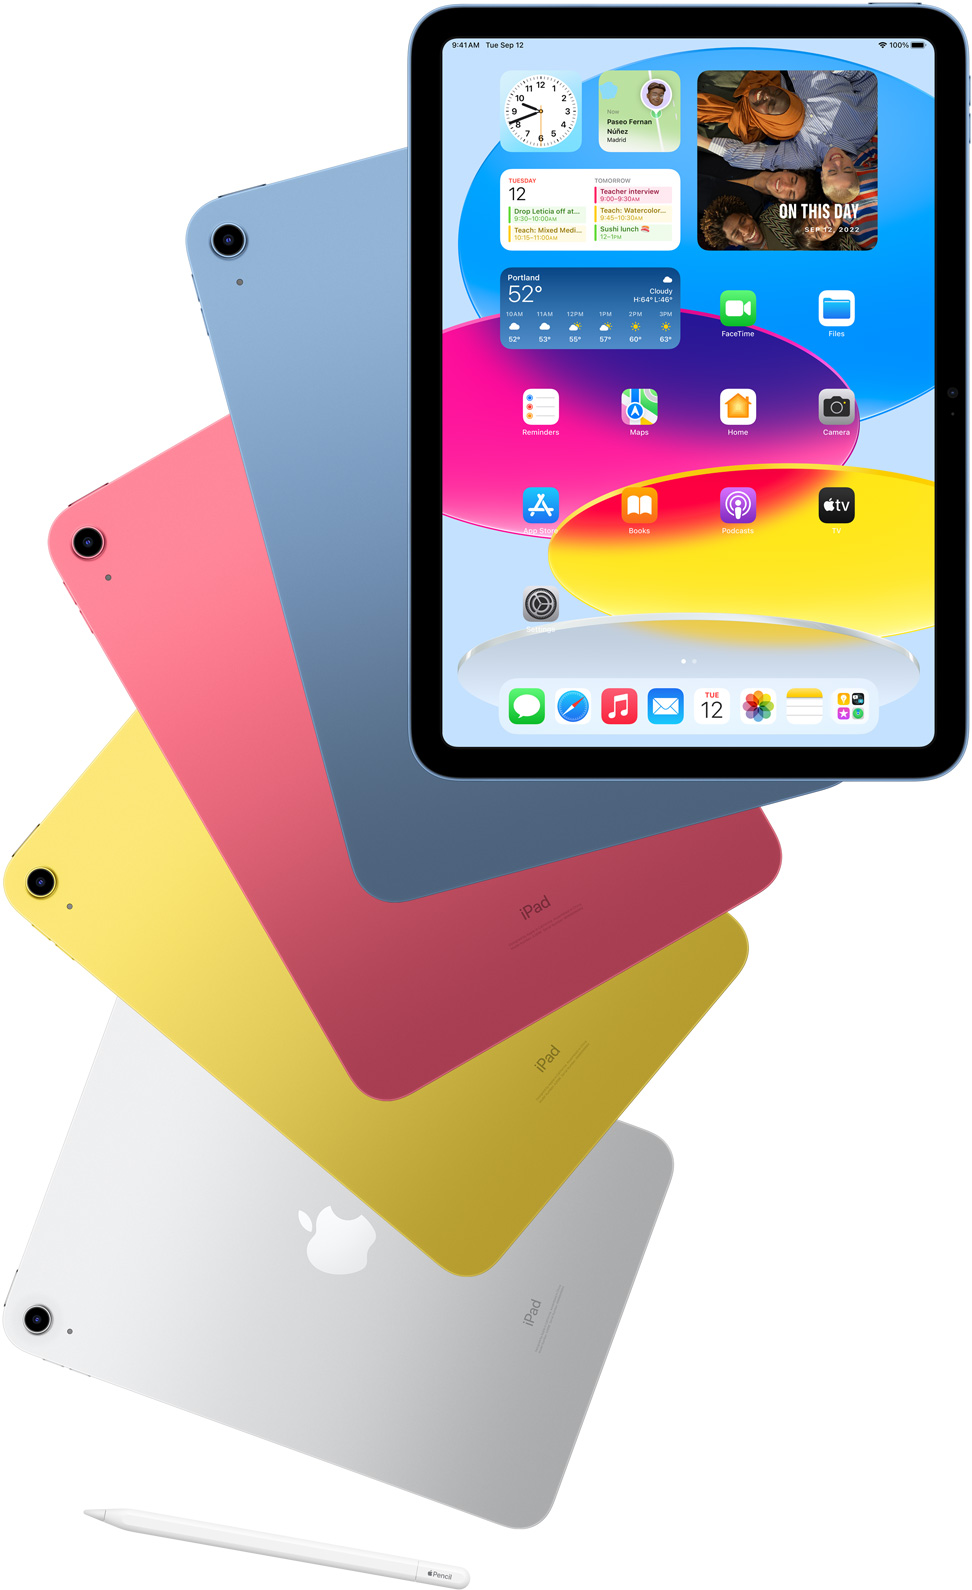 Вид iPad спереди с открытым главным экраном и устройства iPad синего, розового, желтого и серебристого цветов за ним. Apple Pencil рядом с расположенными каскадом моделями iPad.